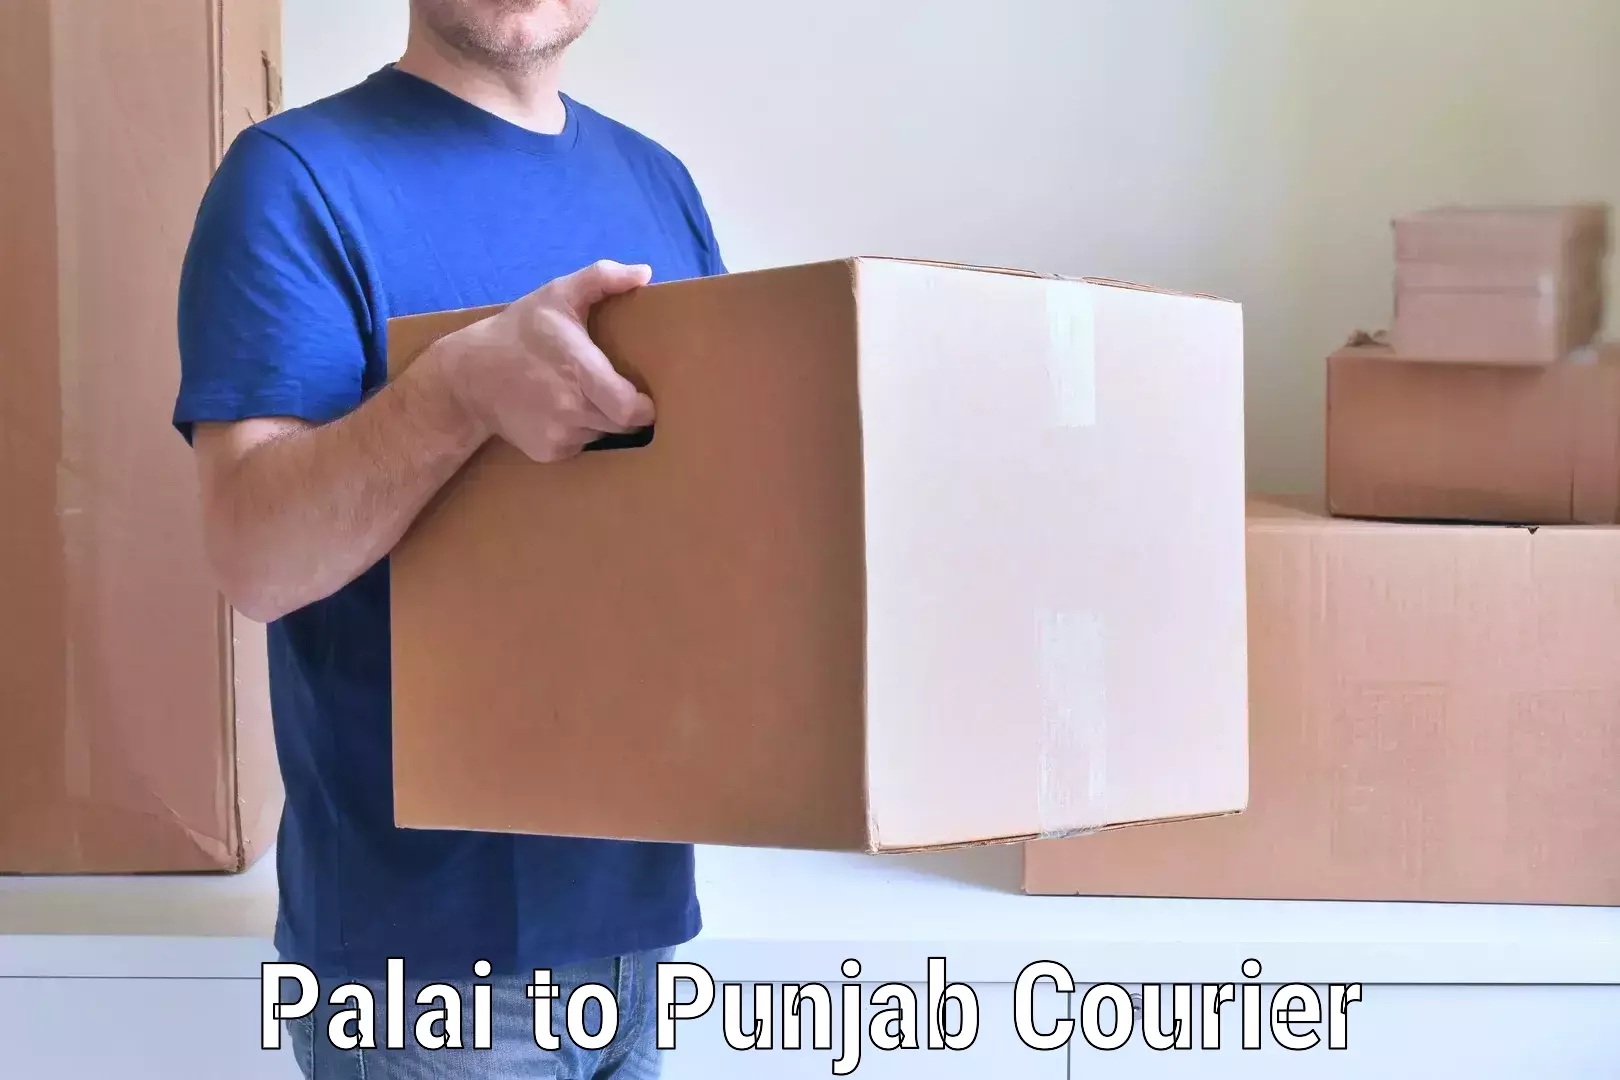 Furniture transport services Palai to Punjab